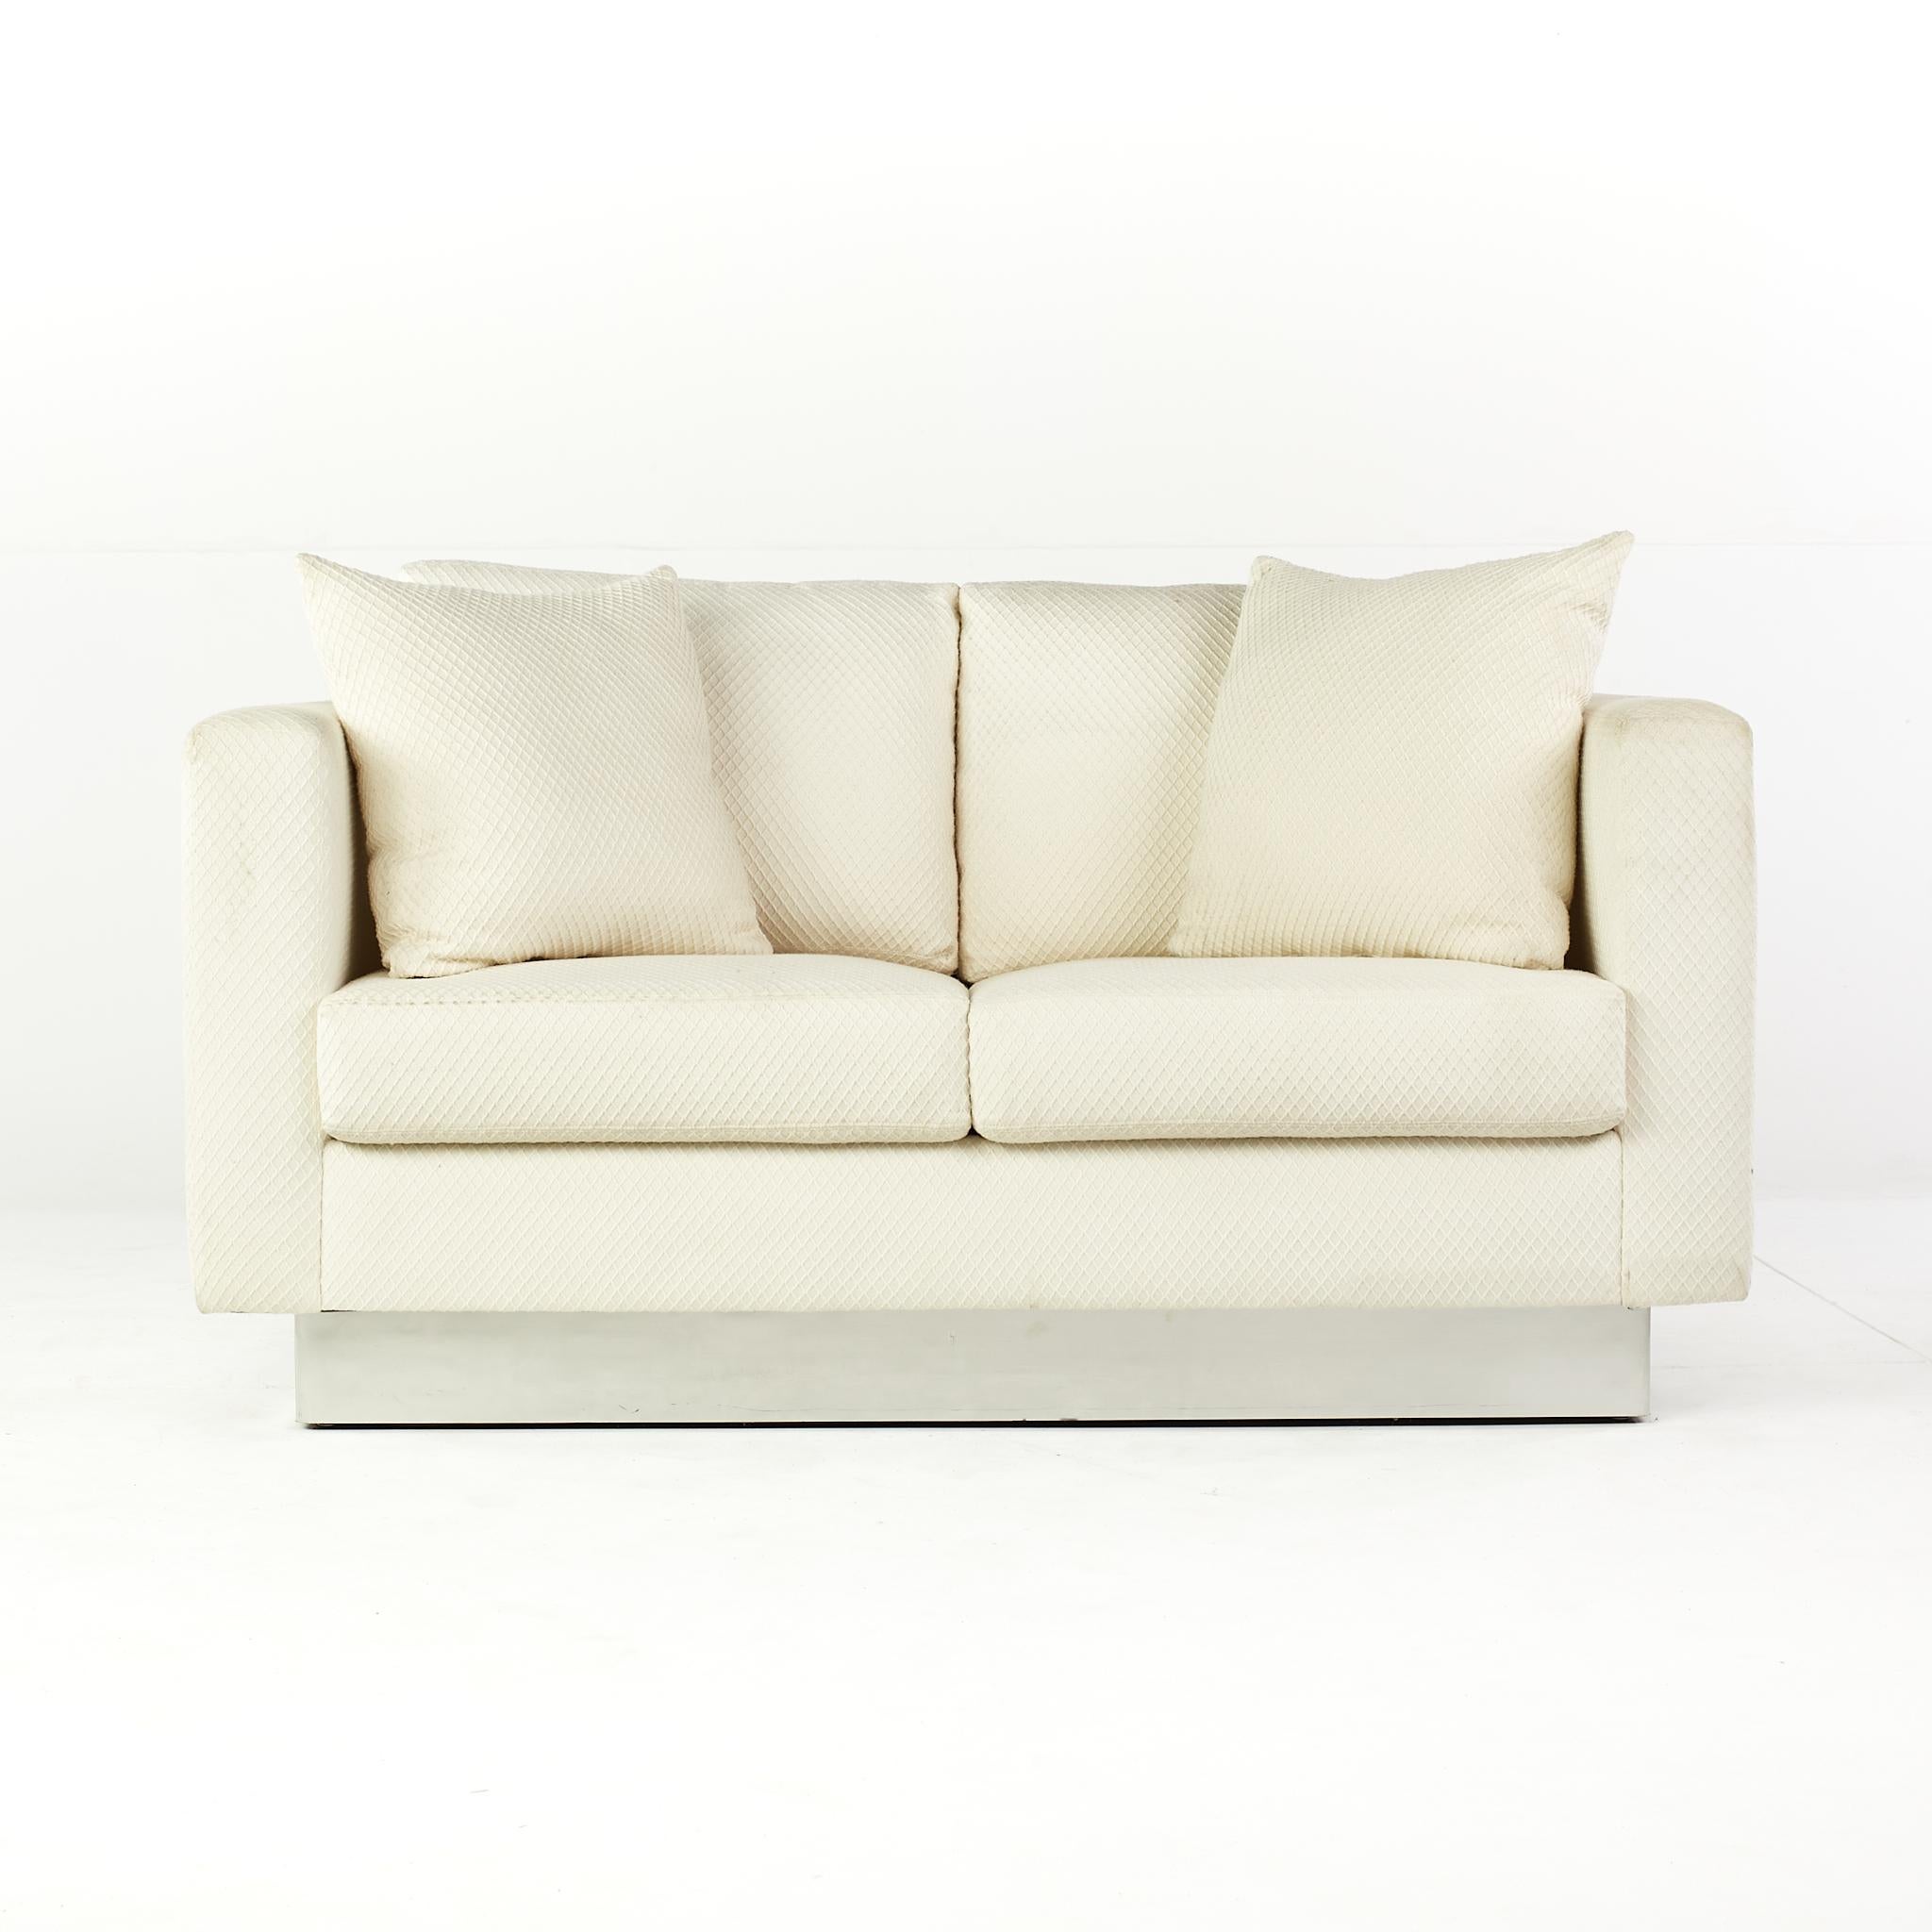 Milo Baughman Stil Mitte des Jahrhunderts modernistischen Chrom Basis Loveseat.

Dieses Sofa misst: 60 breit x 37 tief x 28 Zoll hoch, mit einer Sitzhöhe von 18 und Armhöhe von 28 Zoll.

Alle Möbelstücke sind in einem so genannten restaurierten